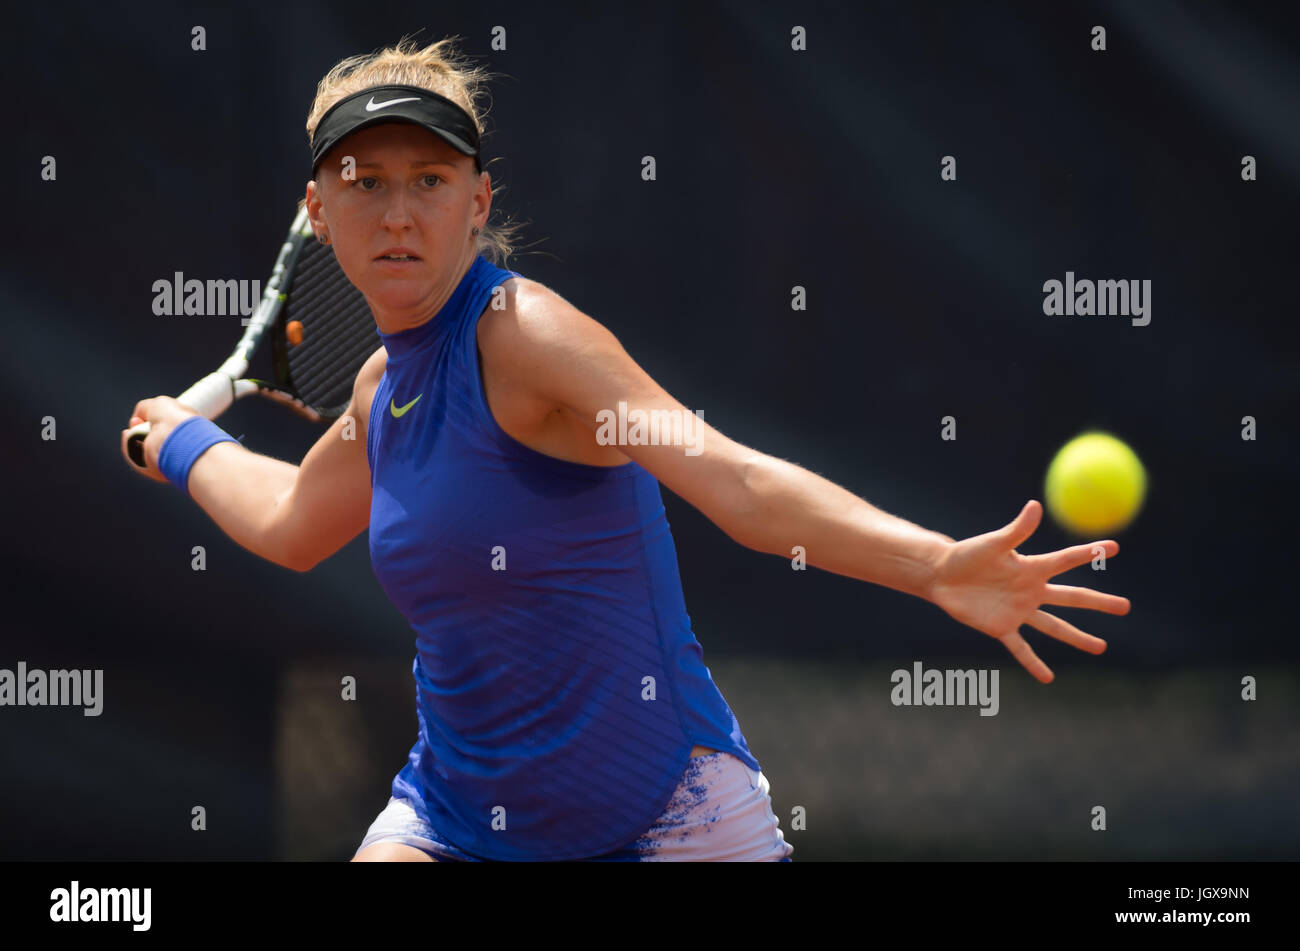 Versmold, Deutschland. 11. Juli 2017. Tereza Smitkova beim Tennisturnier 2017 Reinert Open ITF $60 © Jimmie48 Fotografie/Alamy Live News Stockfoto